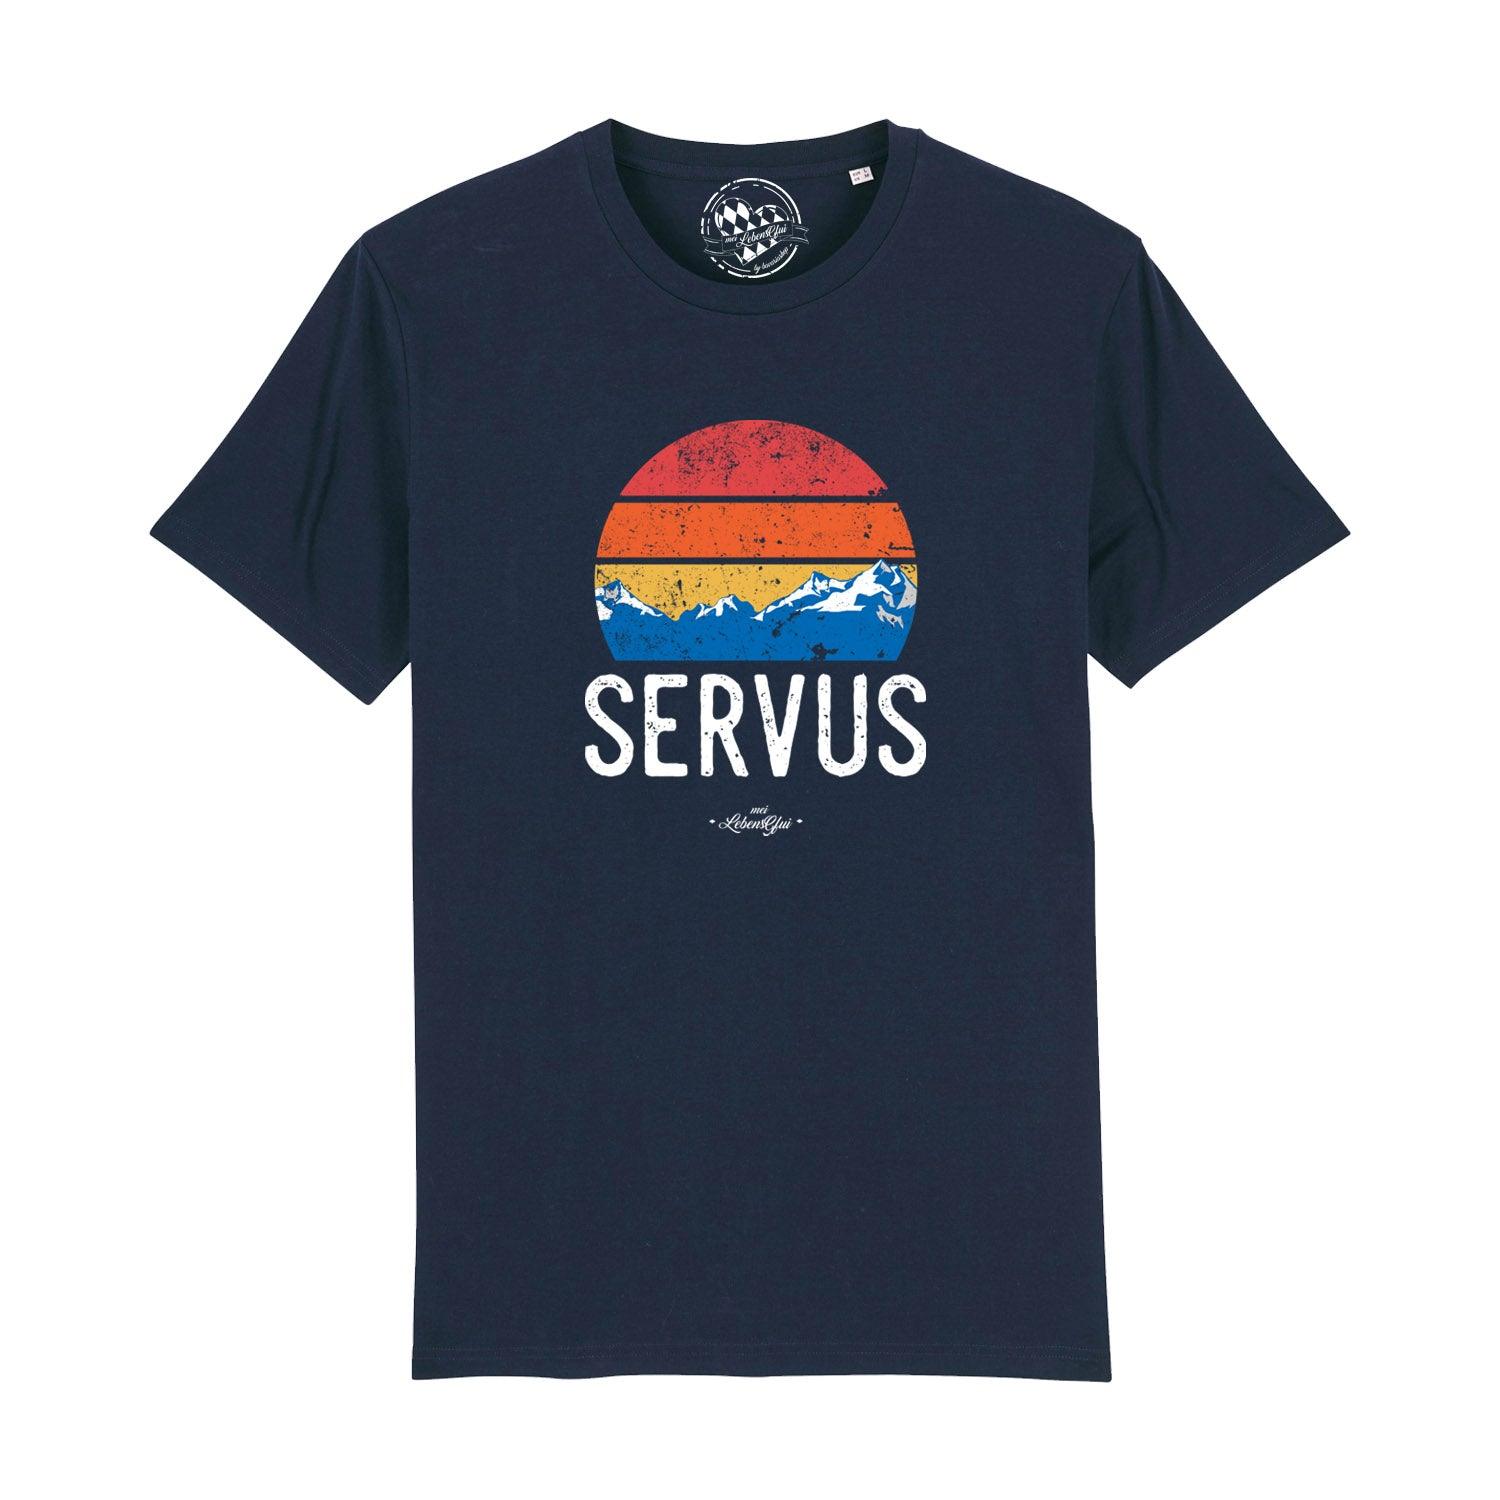 Herren T-Shirt "Servus" - bavariashop - mei LebensGfui